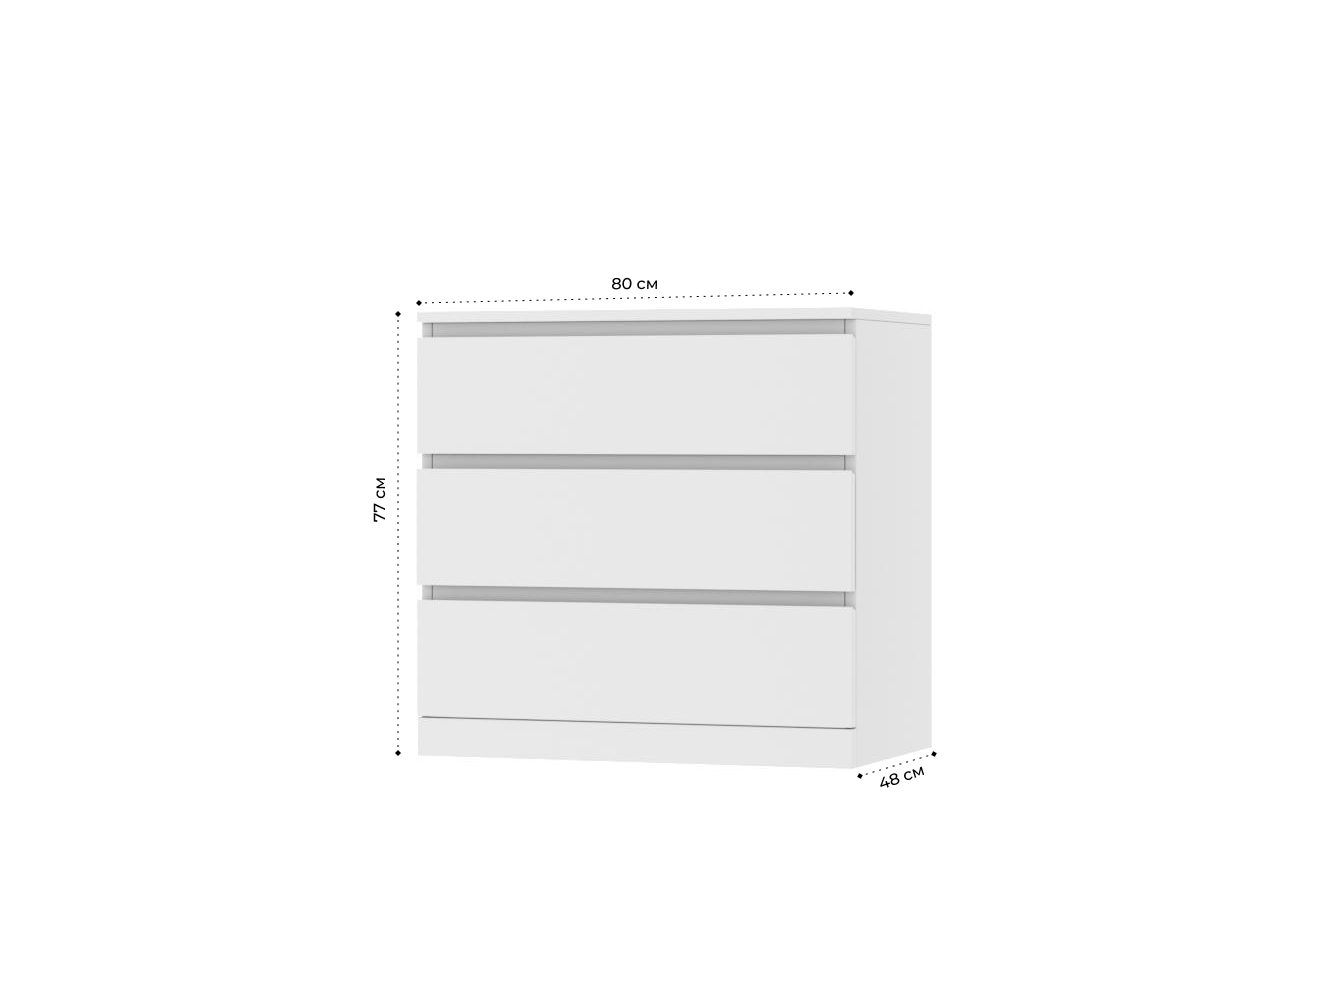 Комод Мальм 17 white ИКЕА (IKEA) изображение товара